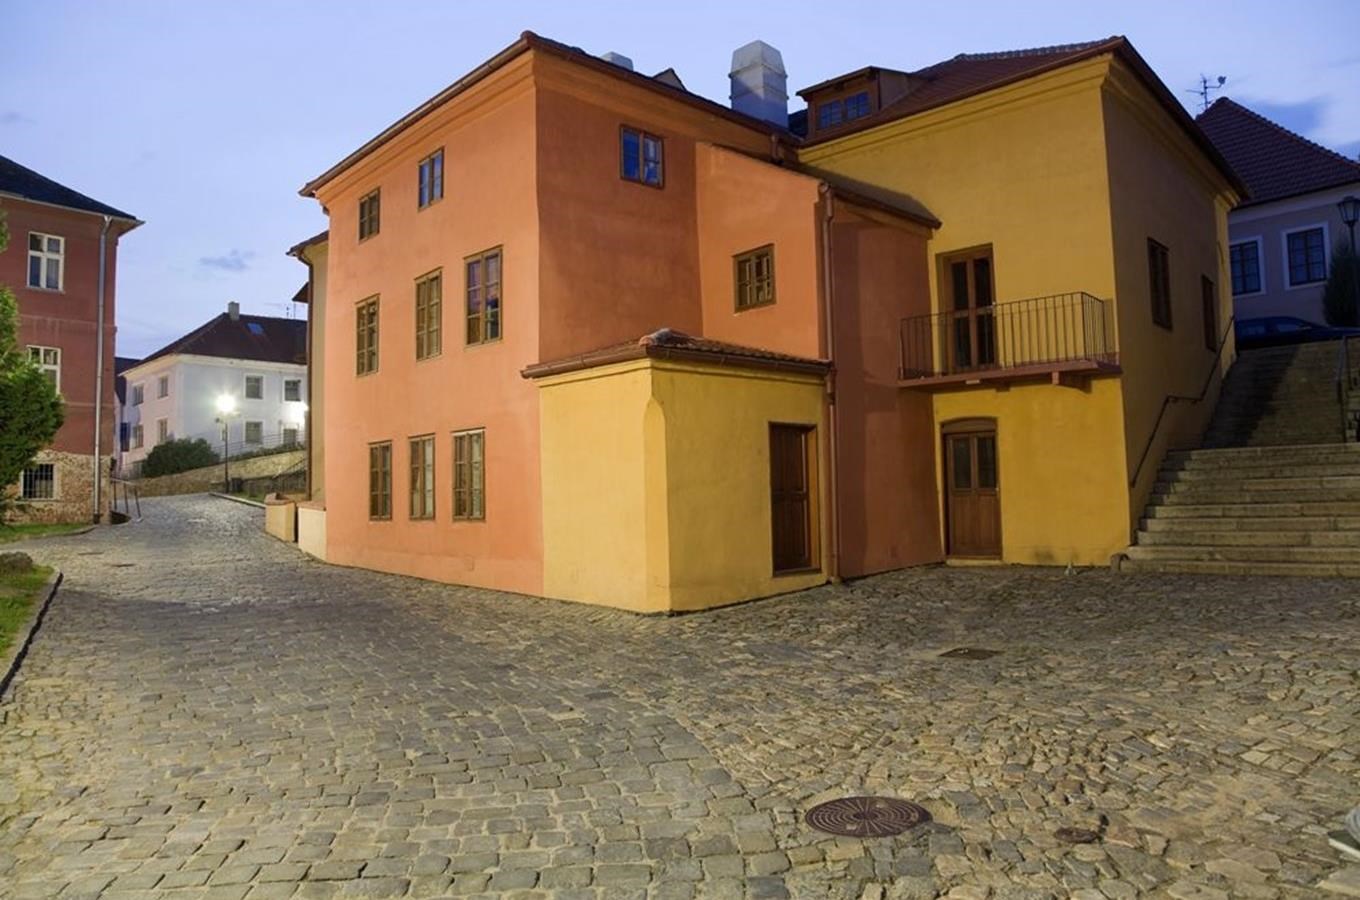 Židovské ghetto Třebíč - nejzachovalejší židovské ghetto v České republice